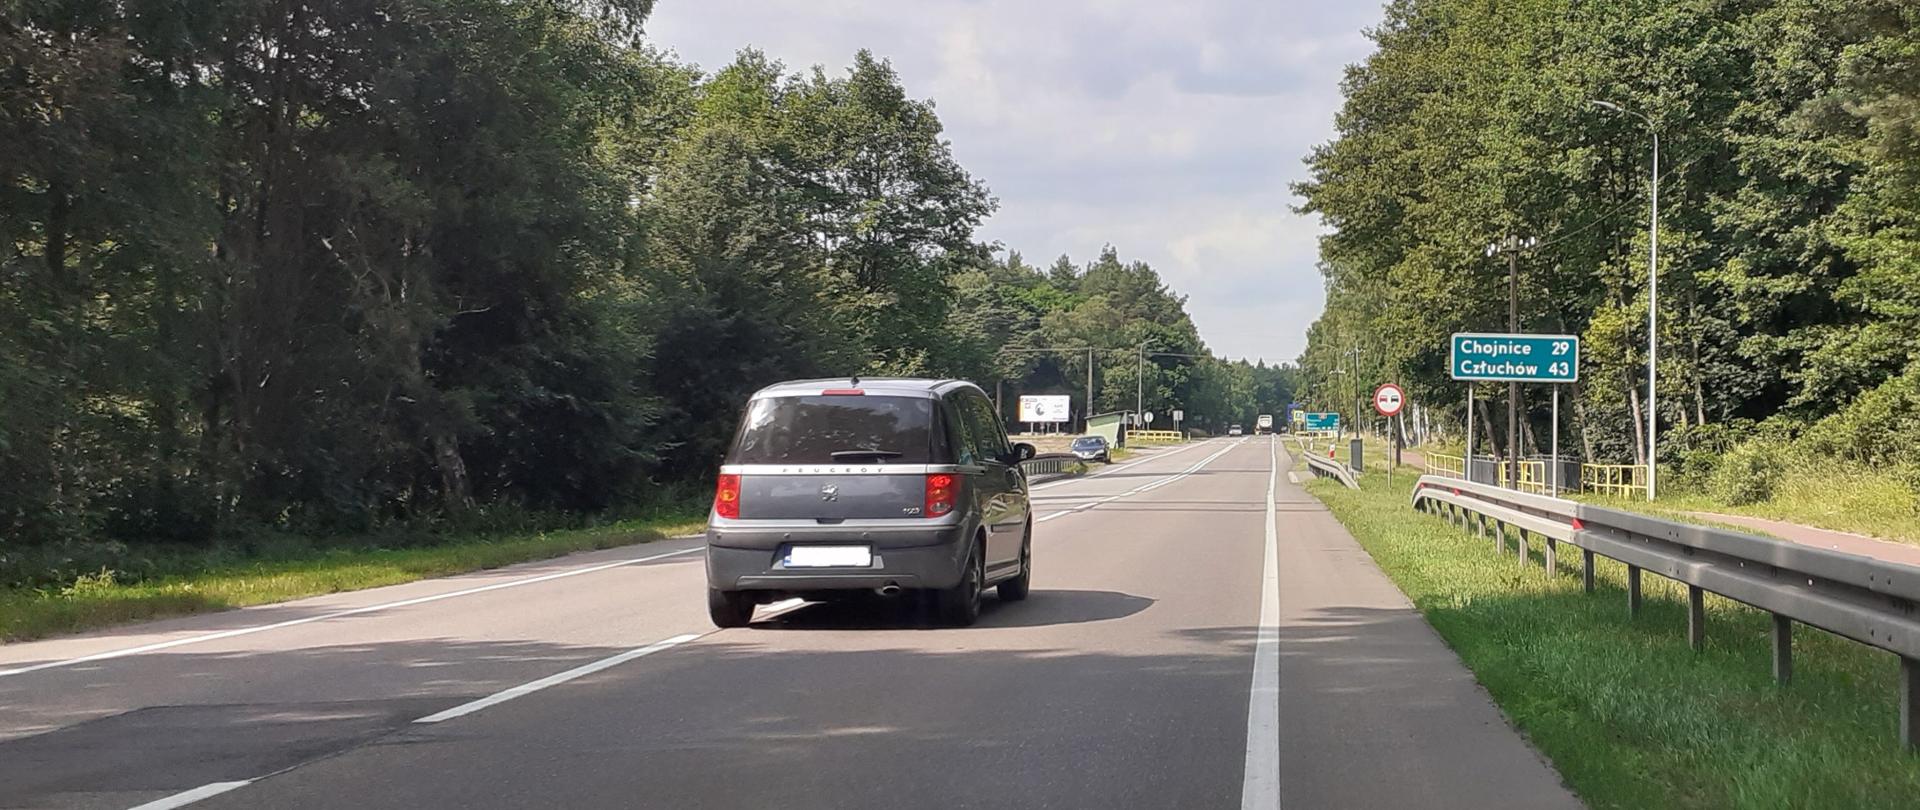 Zdjęcie przedstawia drogę krajową nr 22 między Czerskiem a Chojnicami. Na pierwszym planie jezdnia z samochodem, w oddali znaki drogowe. Wśród znaków tablica drogowskazowa z oznaczeniem odległości do Chojnic i Człuchowa.